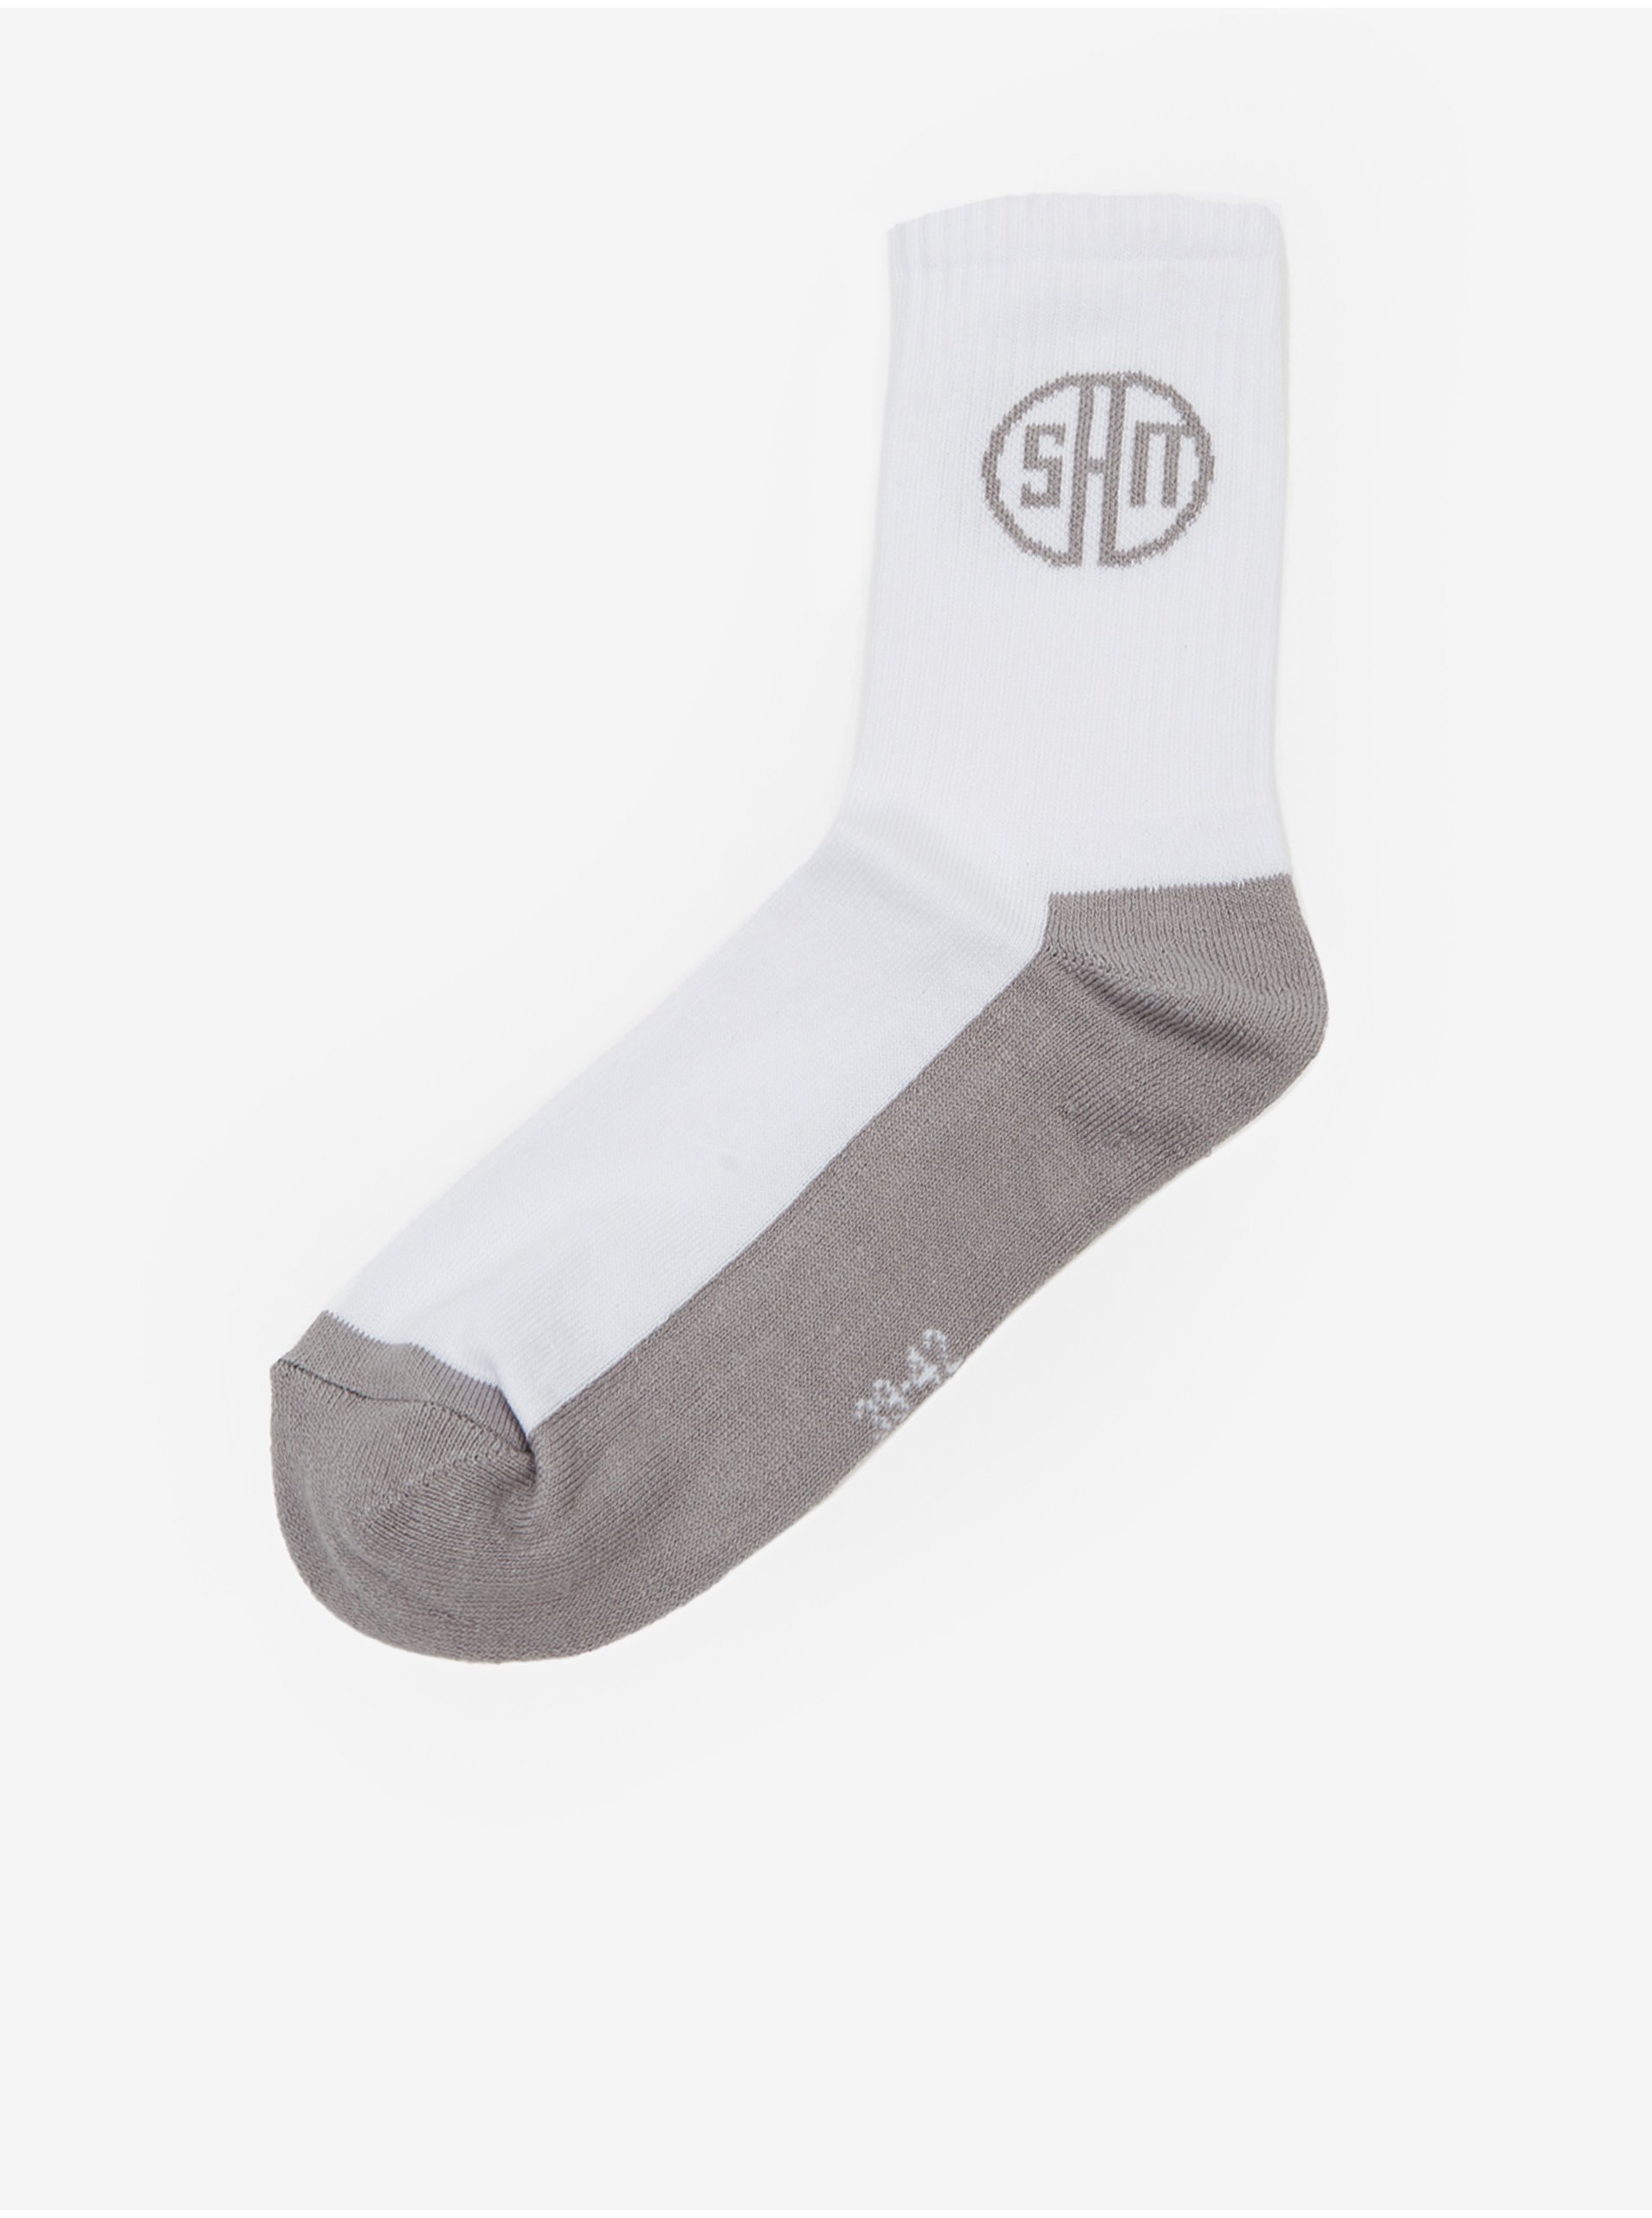 Lacno Šedo-biele unisex ponožky SAM 73